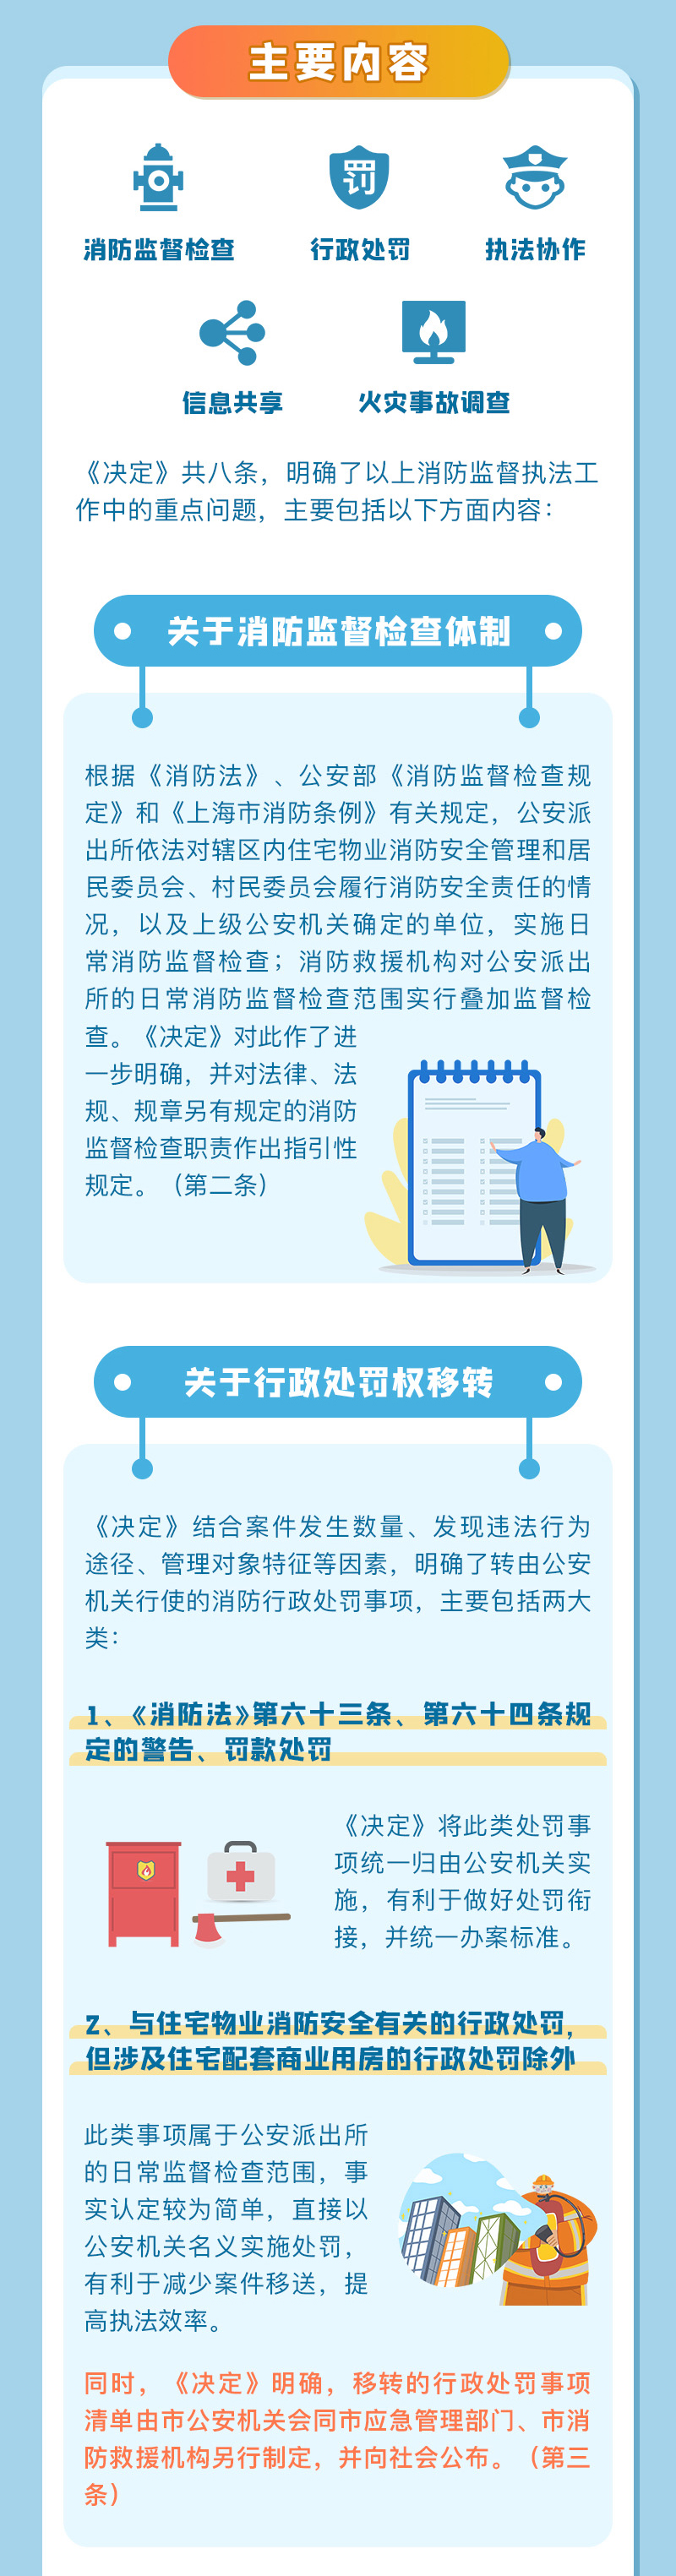 关于《上海市人民政府关于加强本市消防监督执法工作的决定》的解读